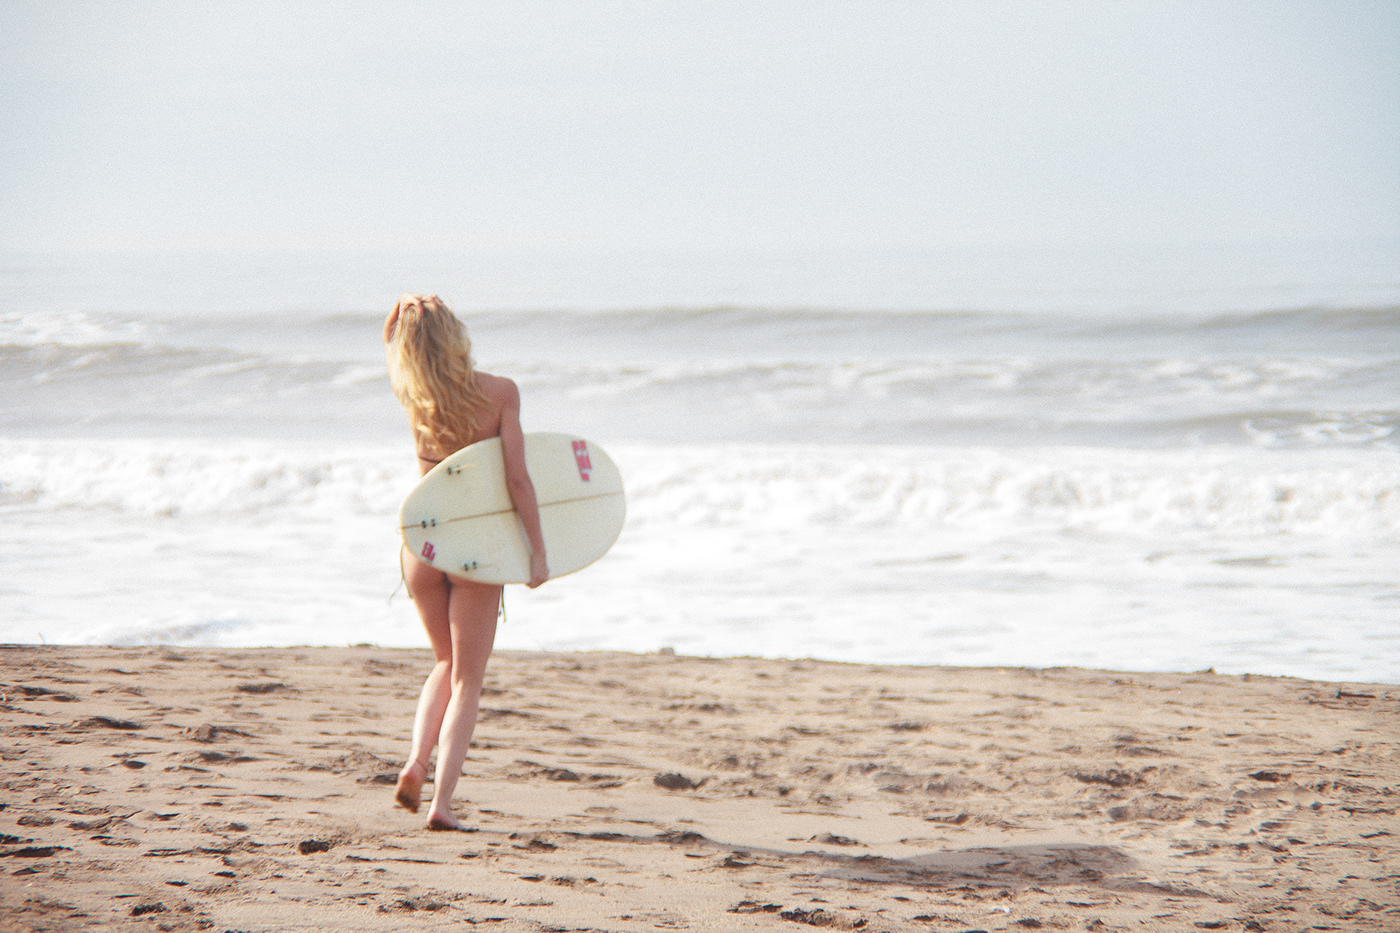 beach Surf model Fashion  summer analog digital swimwear Ocean lifestyle